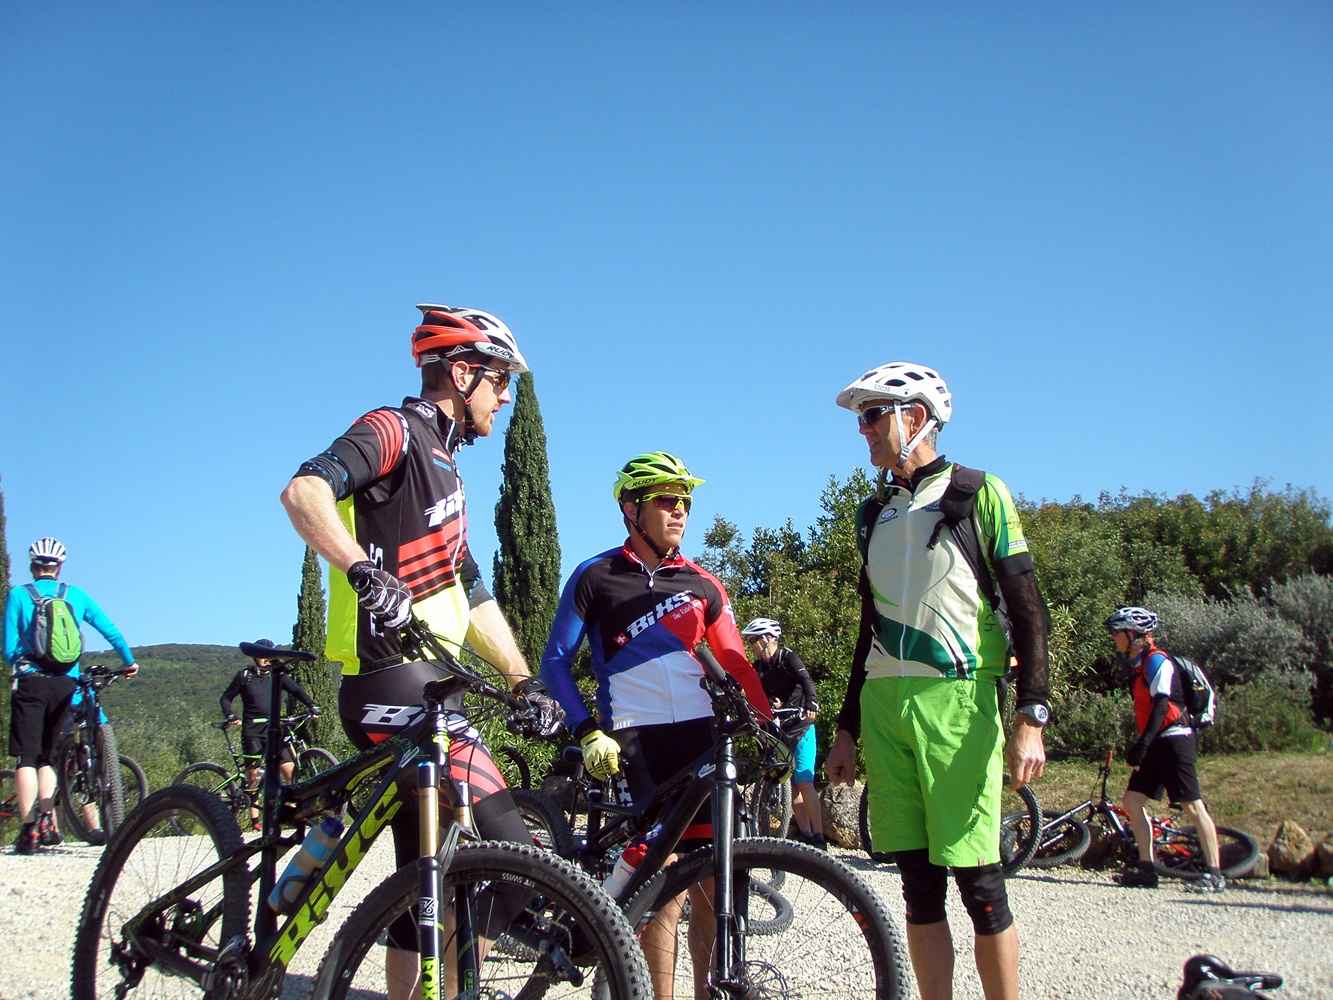 OLYMPUS DIGITAL CAMERA - Bikeferien in der Toskana – Ein grossartiges Erlebnis!